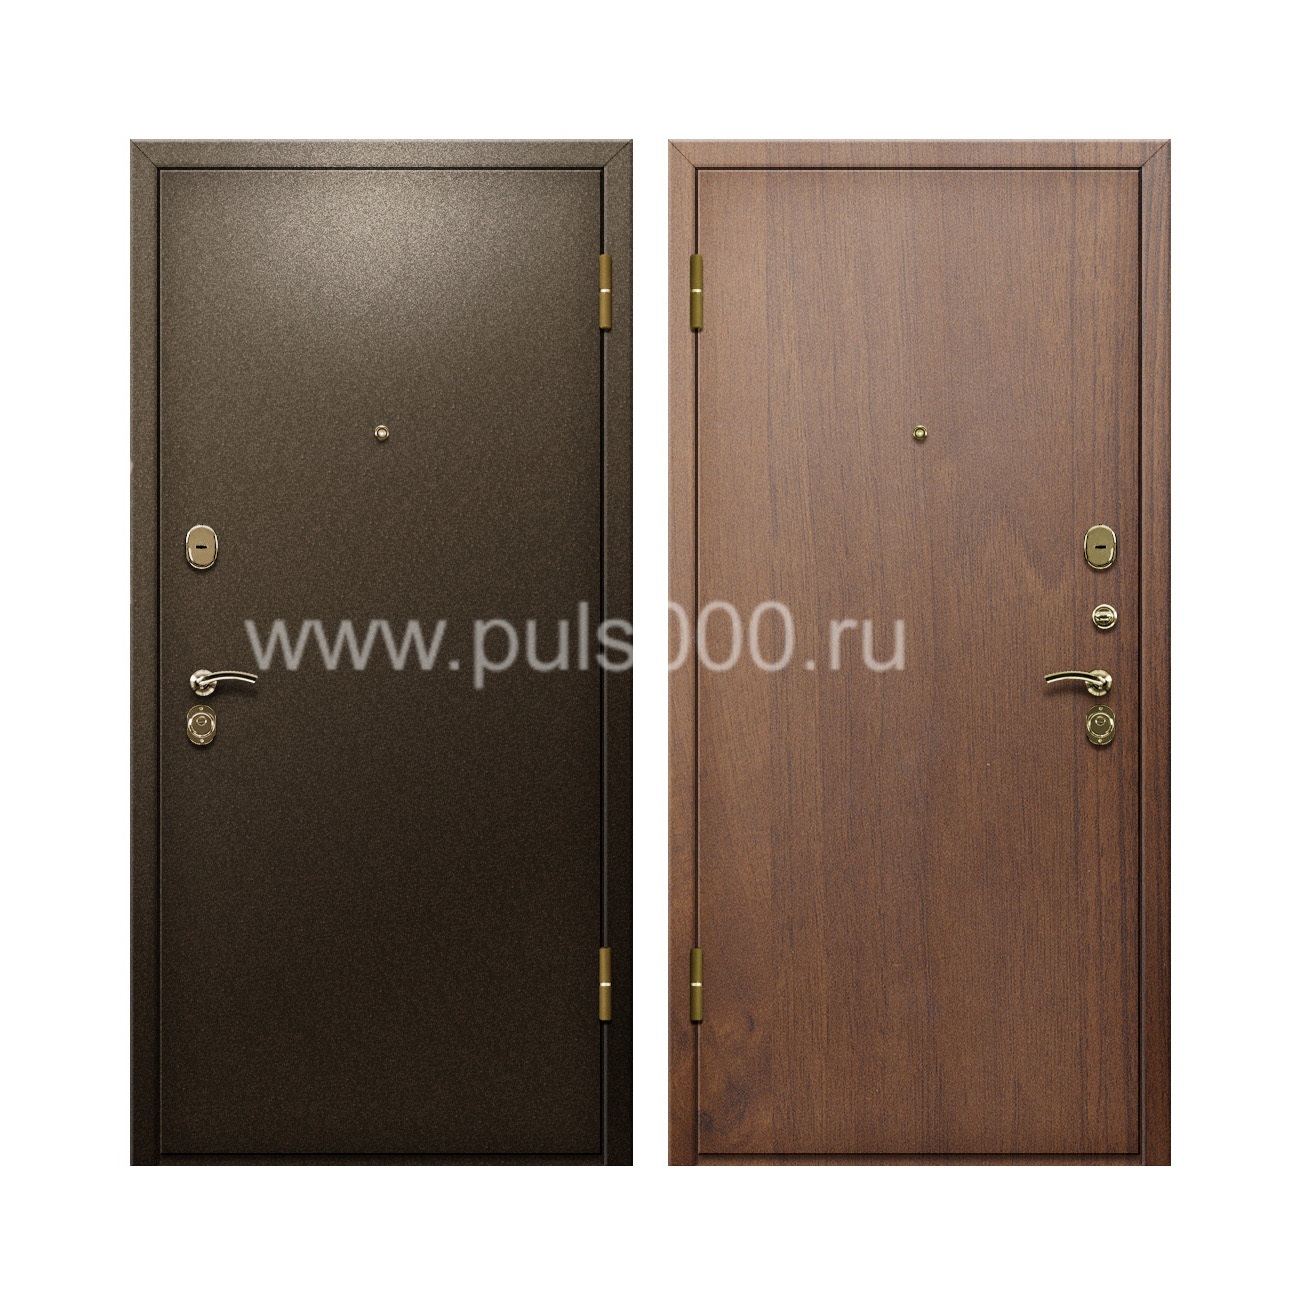 Входная дверь с окрасом из порошка и отделкой ламинатом PR-89